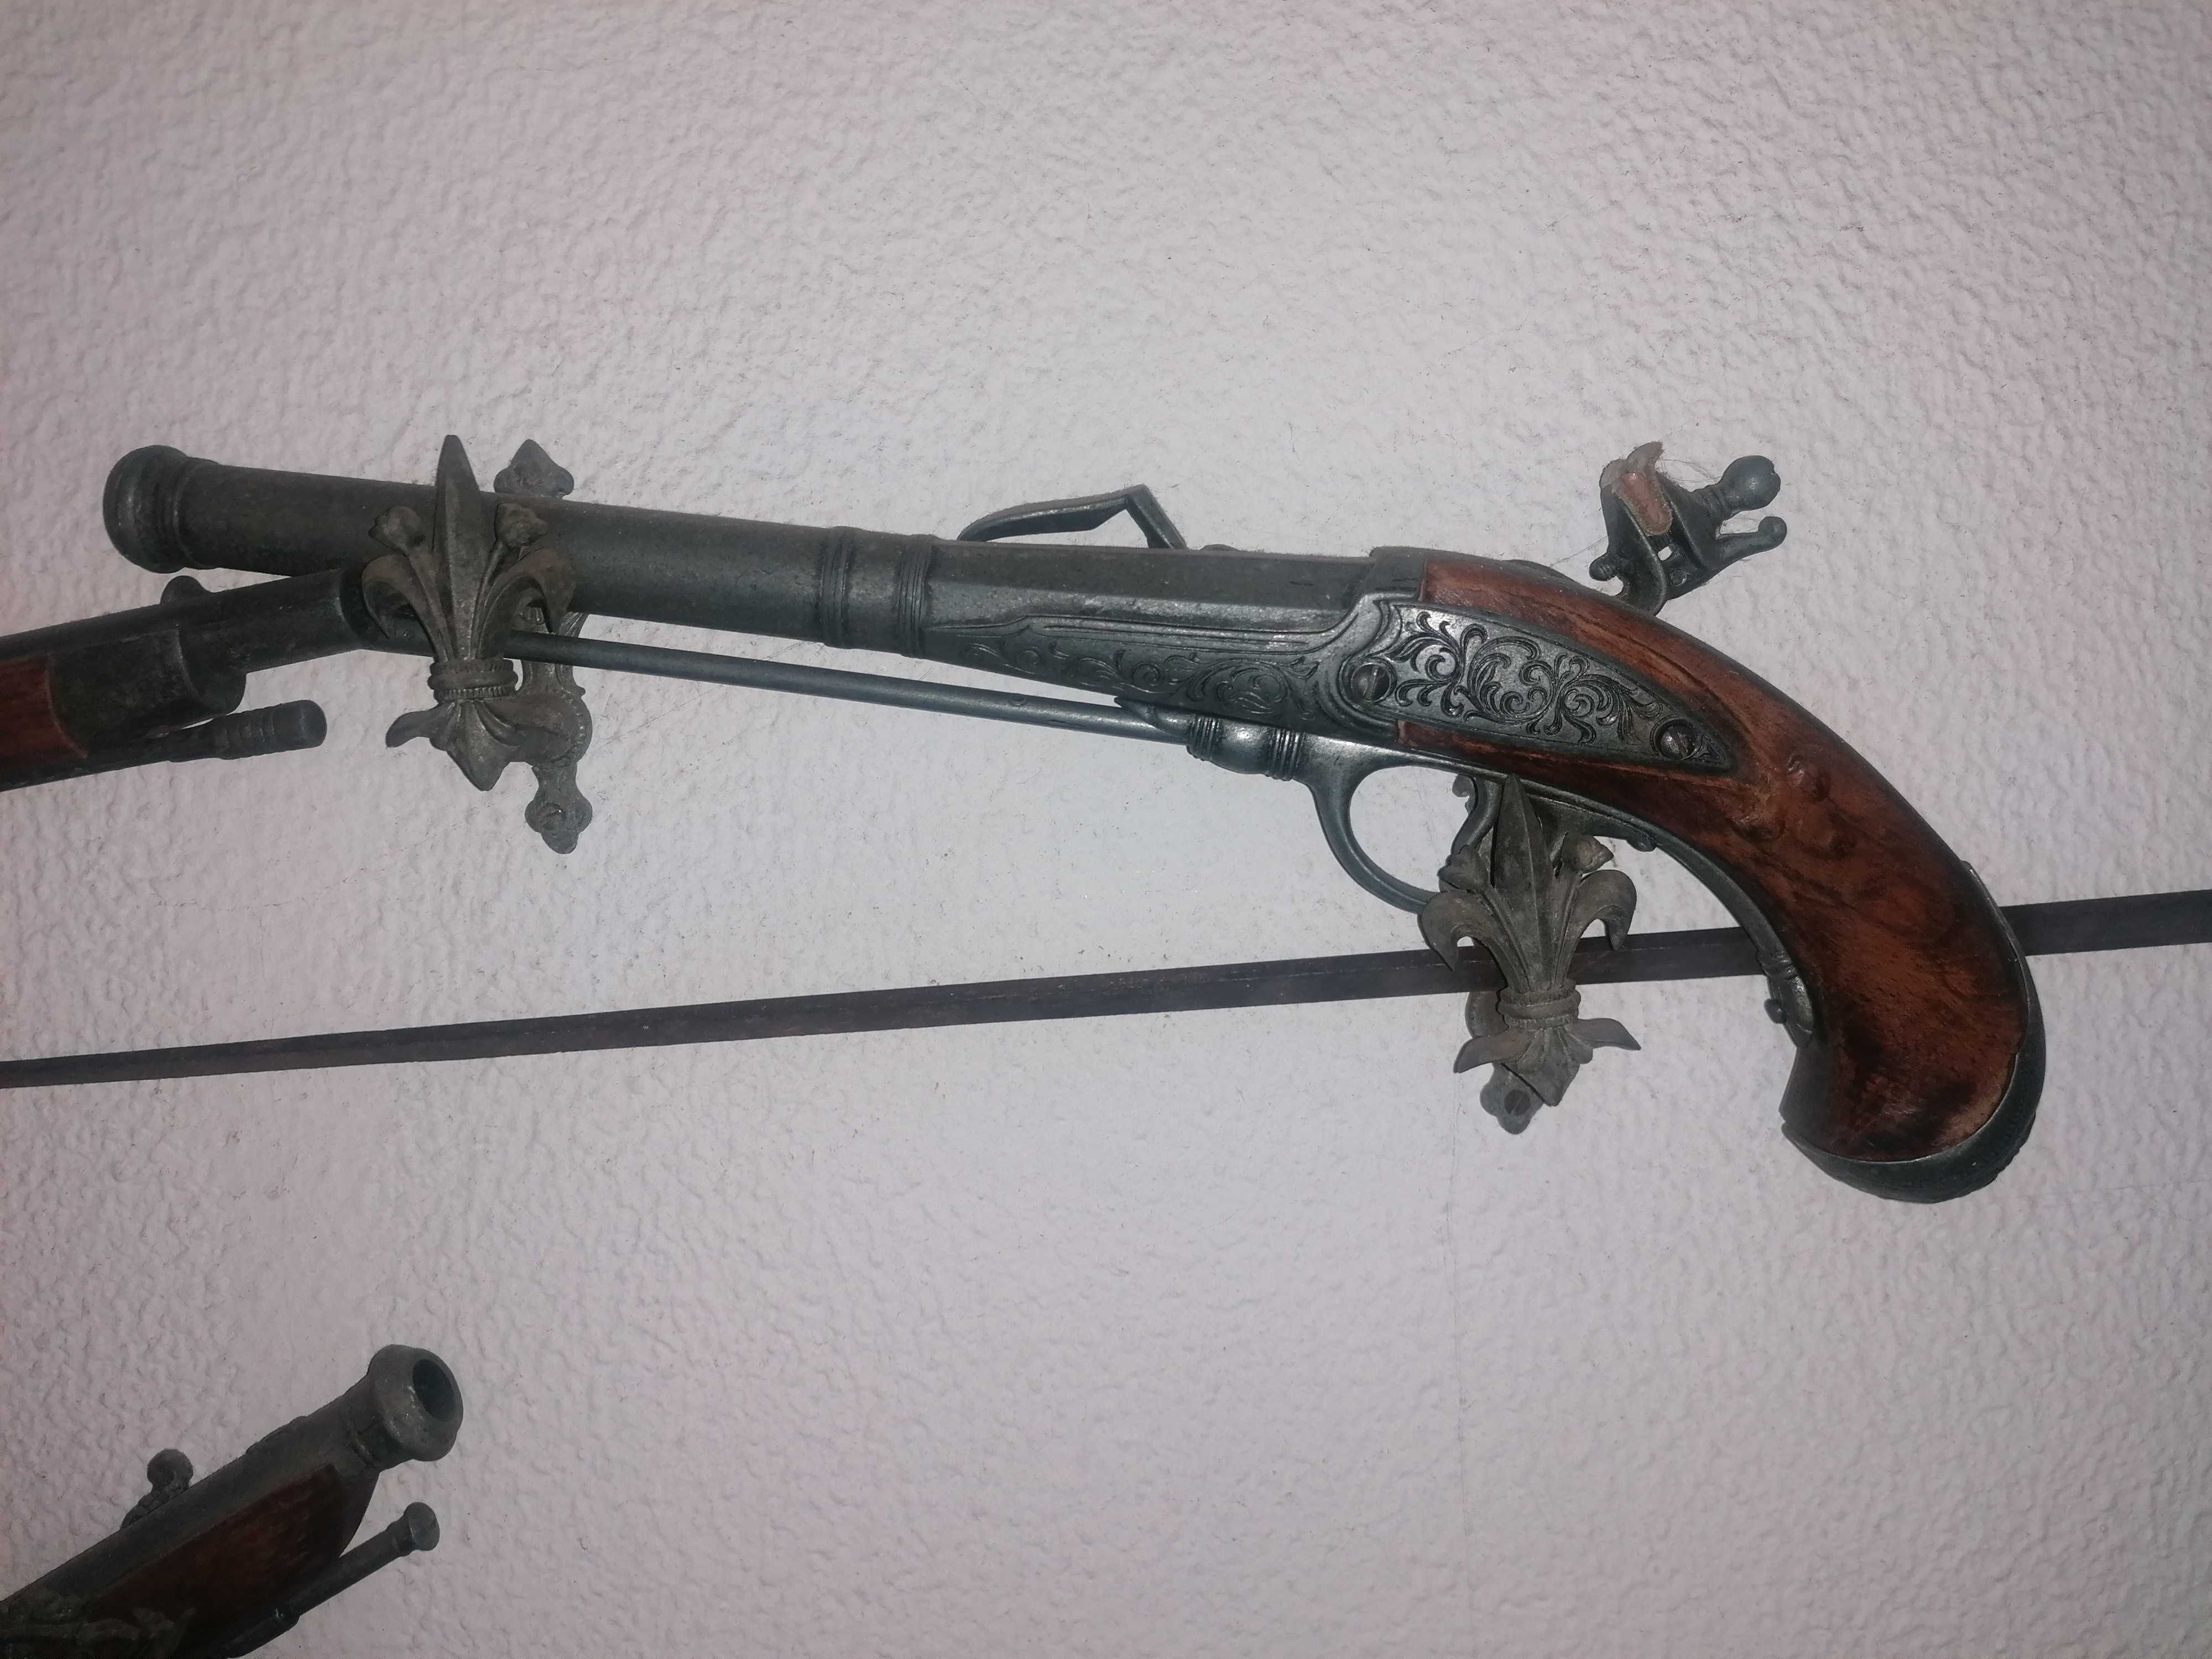 Réplica de pistolas antigas